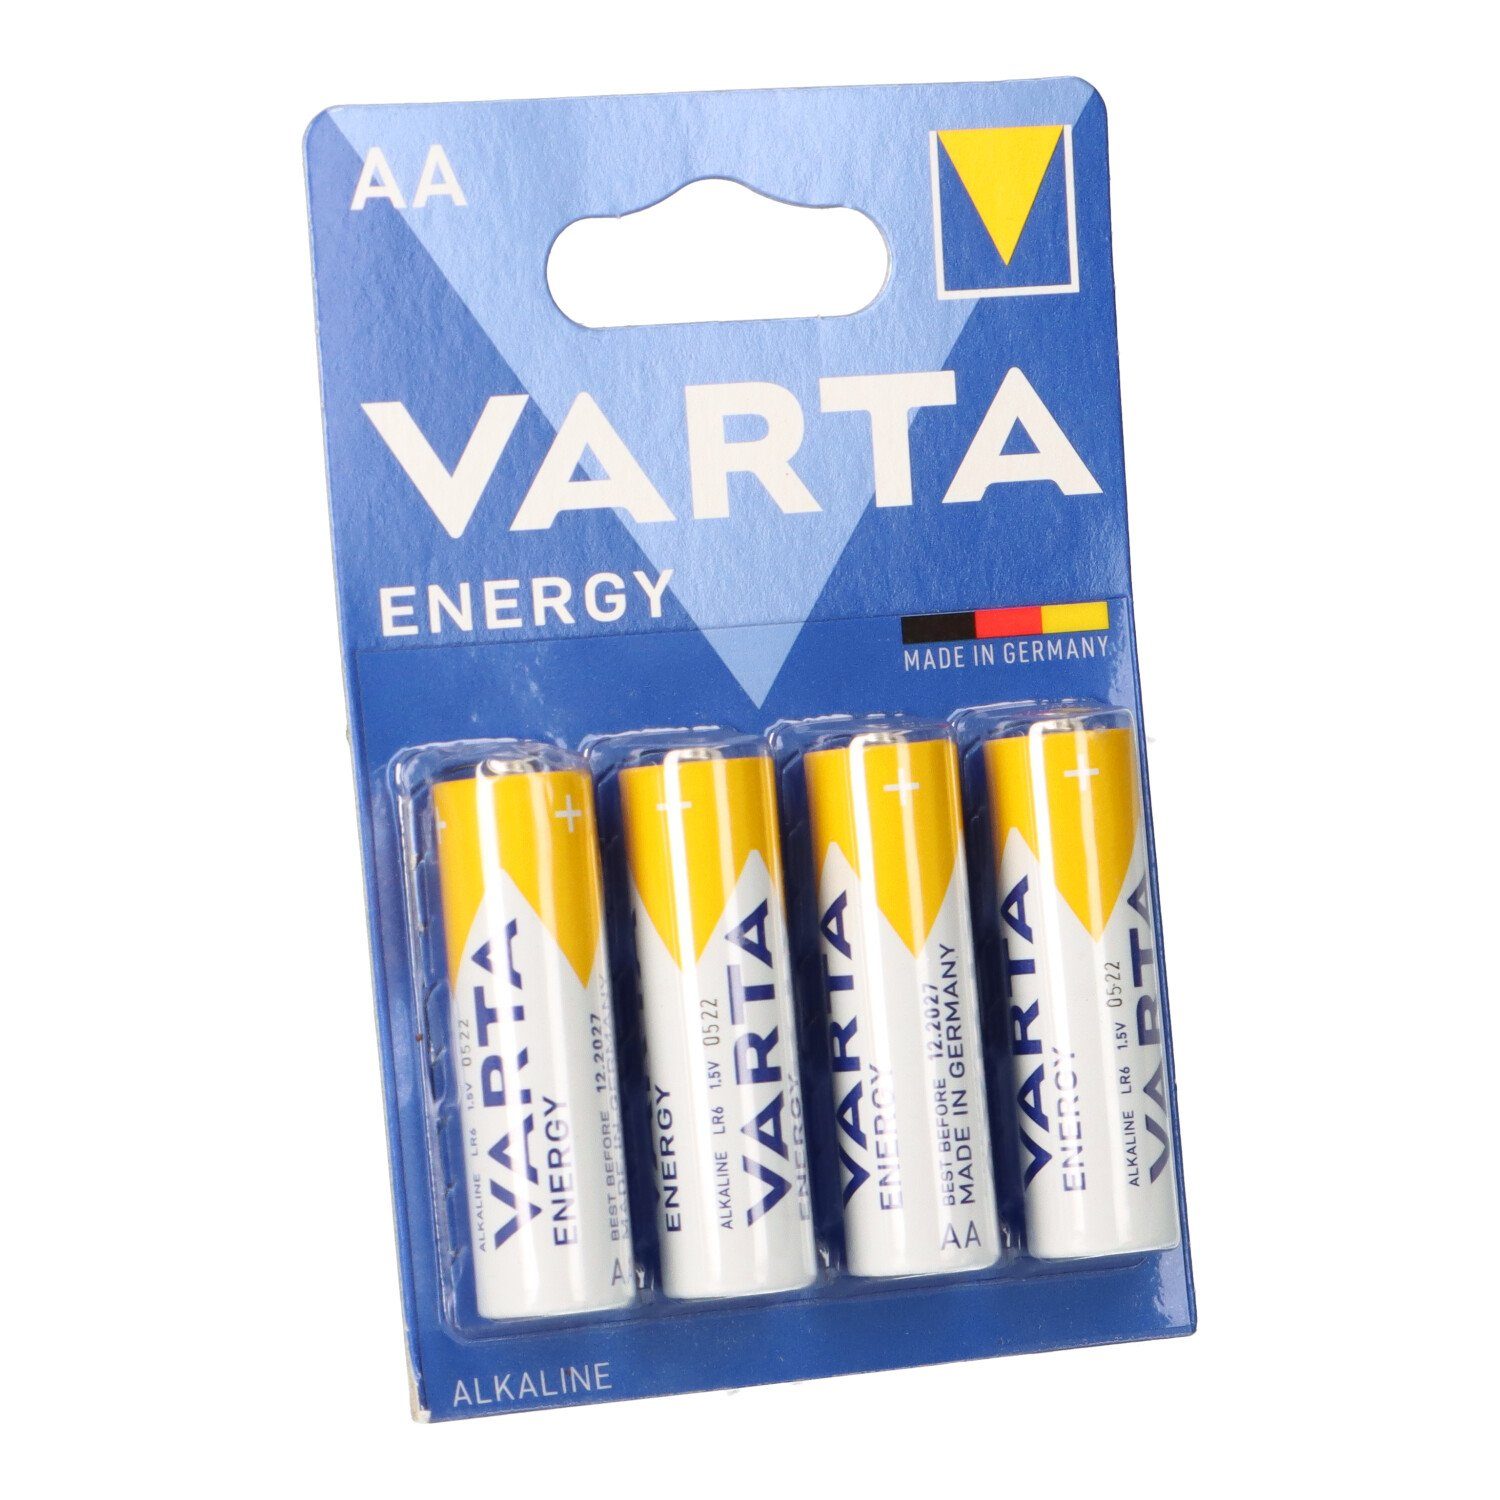 VARTA Varta Energy AlMn AA 1,5V Mignon Batterie 4er Blister Batterie